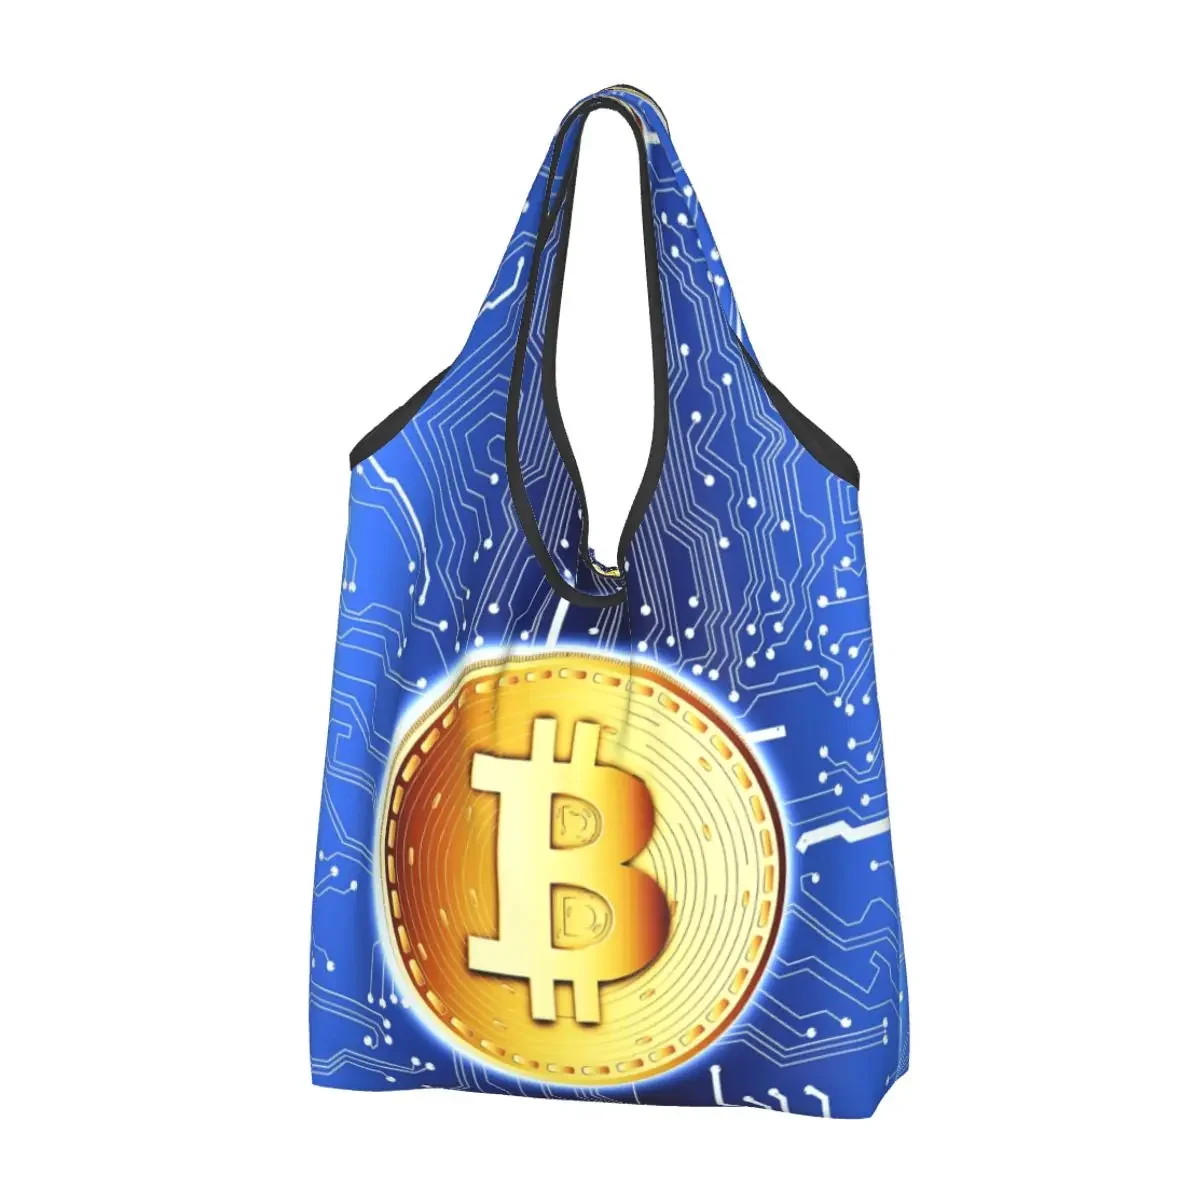 

Сумки для покупок на заказ, женские портативные вместительные сумки-тоуты для покупки продуктов, криптовалюты, биткоина